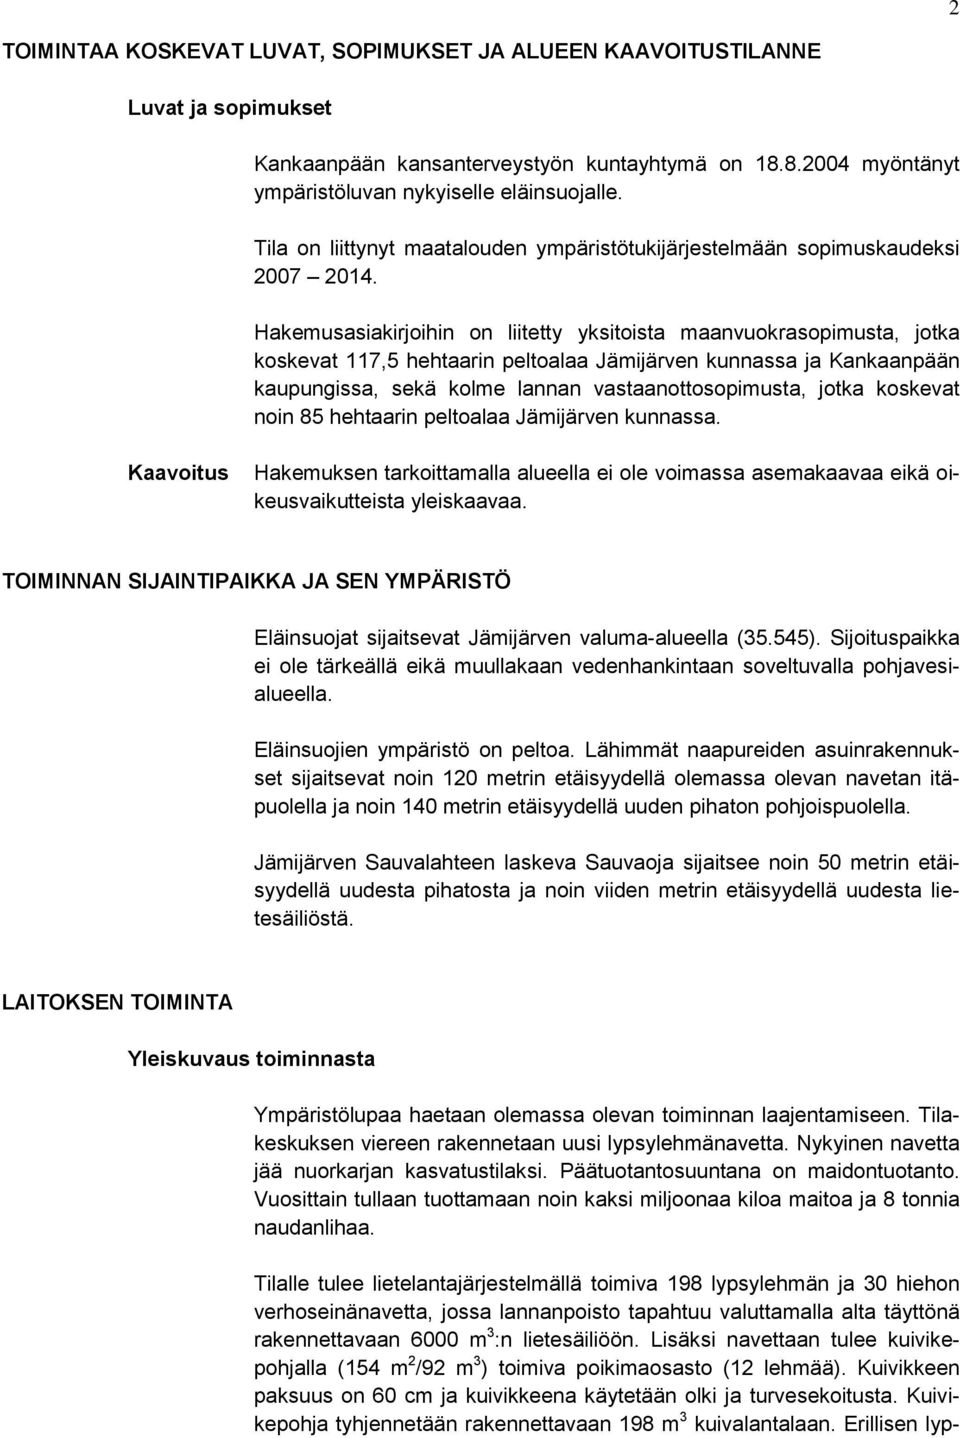 Hakemusasiakirjoihin on liitetty yksitoista maanvuokrasopimusta, jotka koskevat 117,5 hehtaarin peltoalaa Jämijärven kunnassa ja Kankaanpään kaupungissa, sekä kolme lannan vastaanottosopimusta, jotka